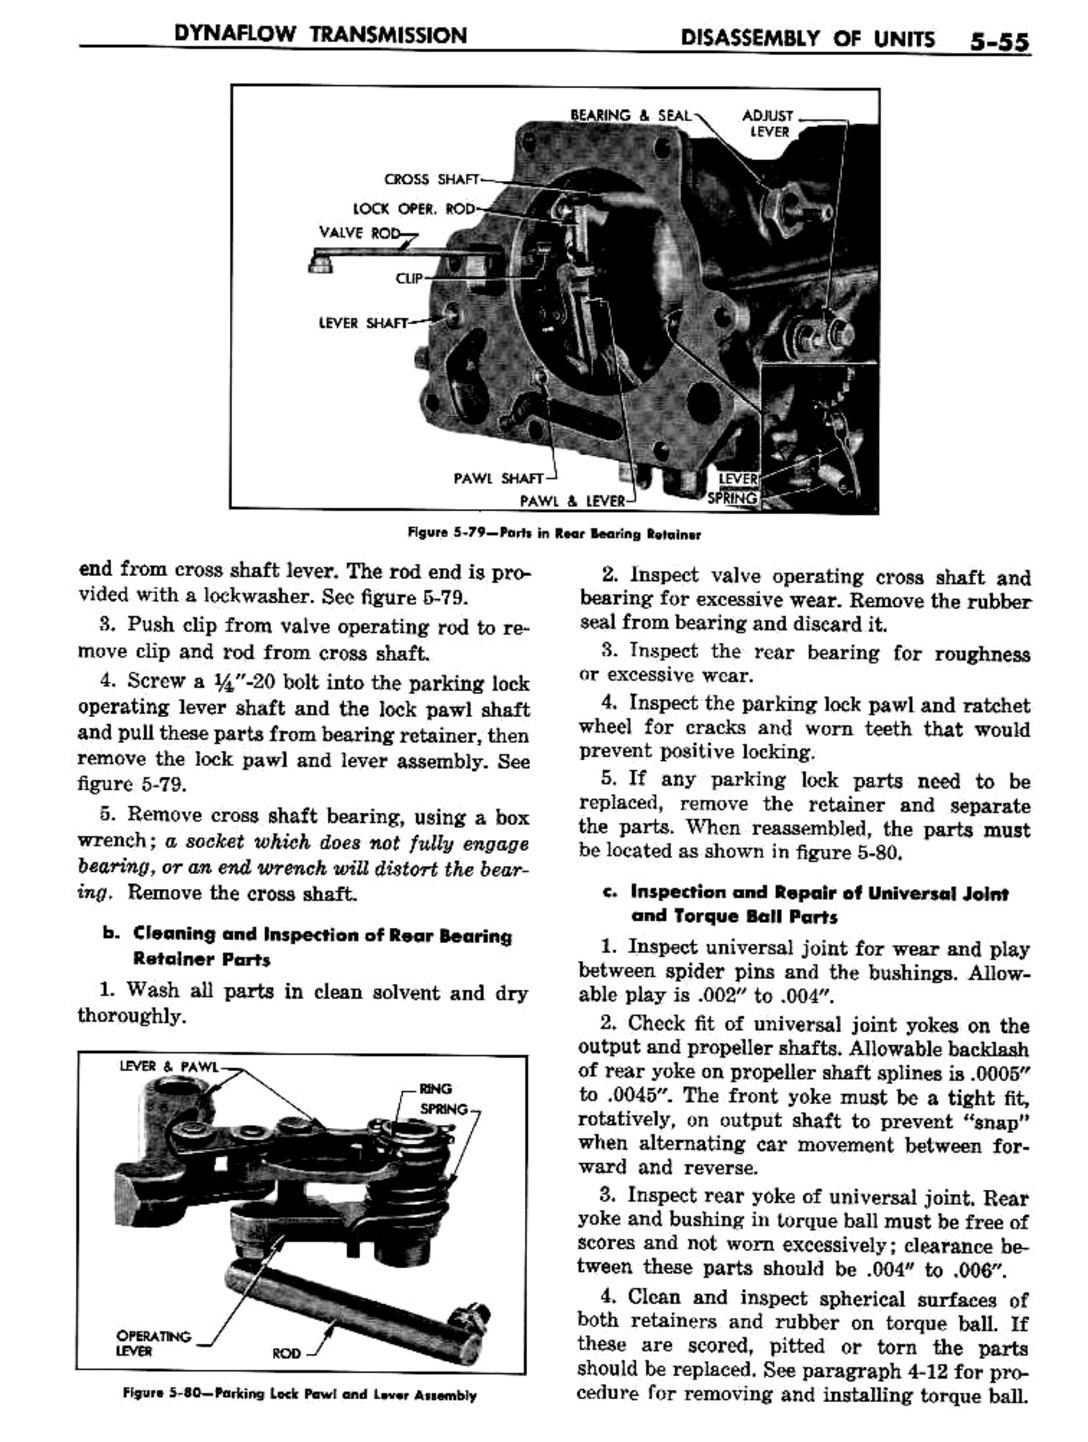 n_06 1957 Buick Shop Manual - Dynaflow-055-055.jpg